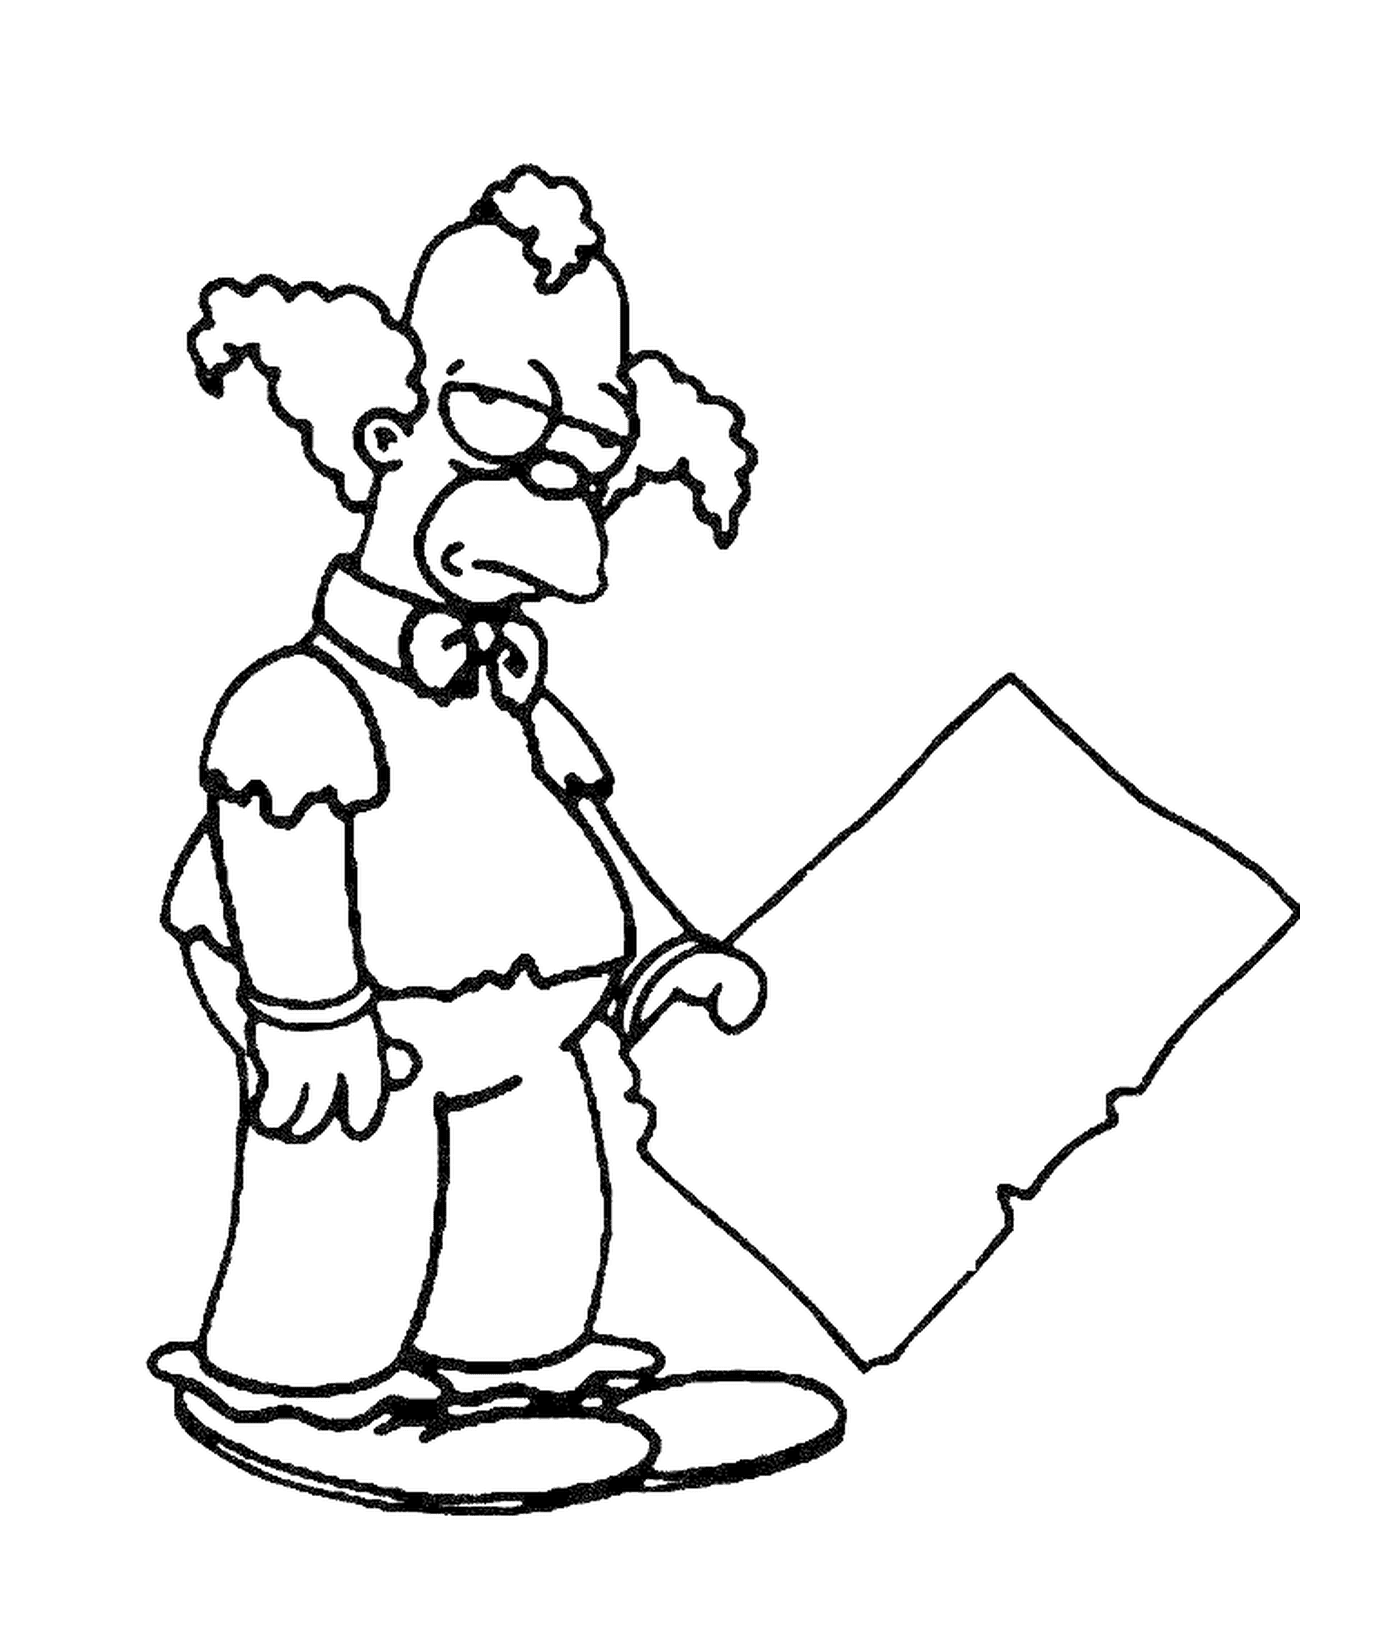  Krusty o palhaço desapontado, ninguém segurando um sinal 